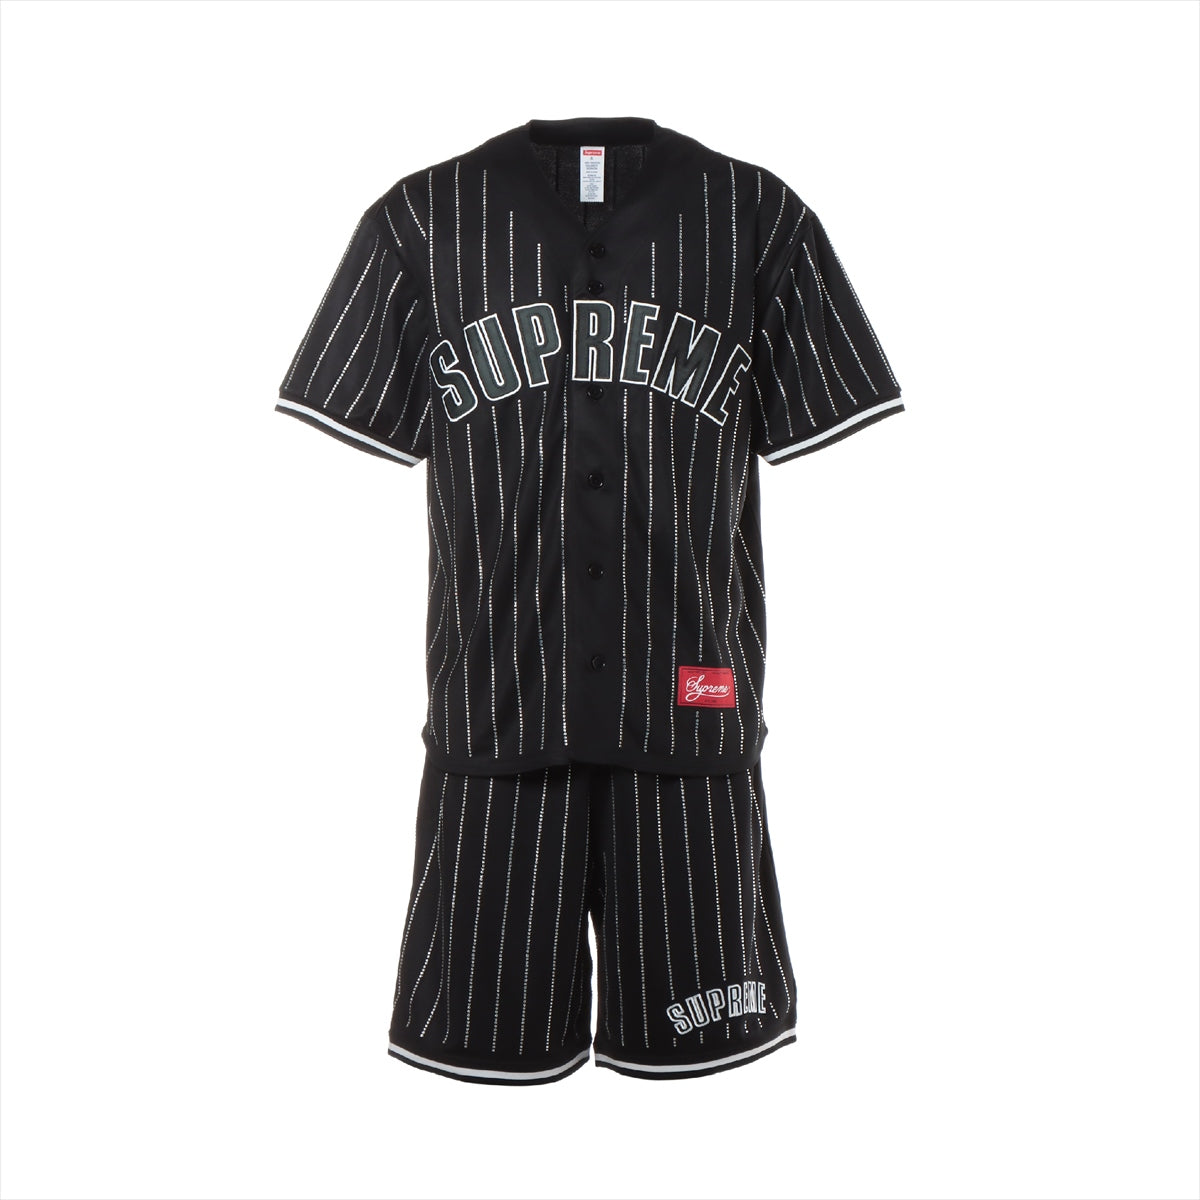 シュプリーム 22SS ポリエステル セットアップ S メンズ ブラック Rhinestone Stripe Basketball Jersey/Short